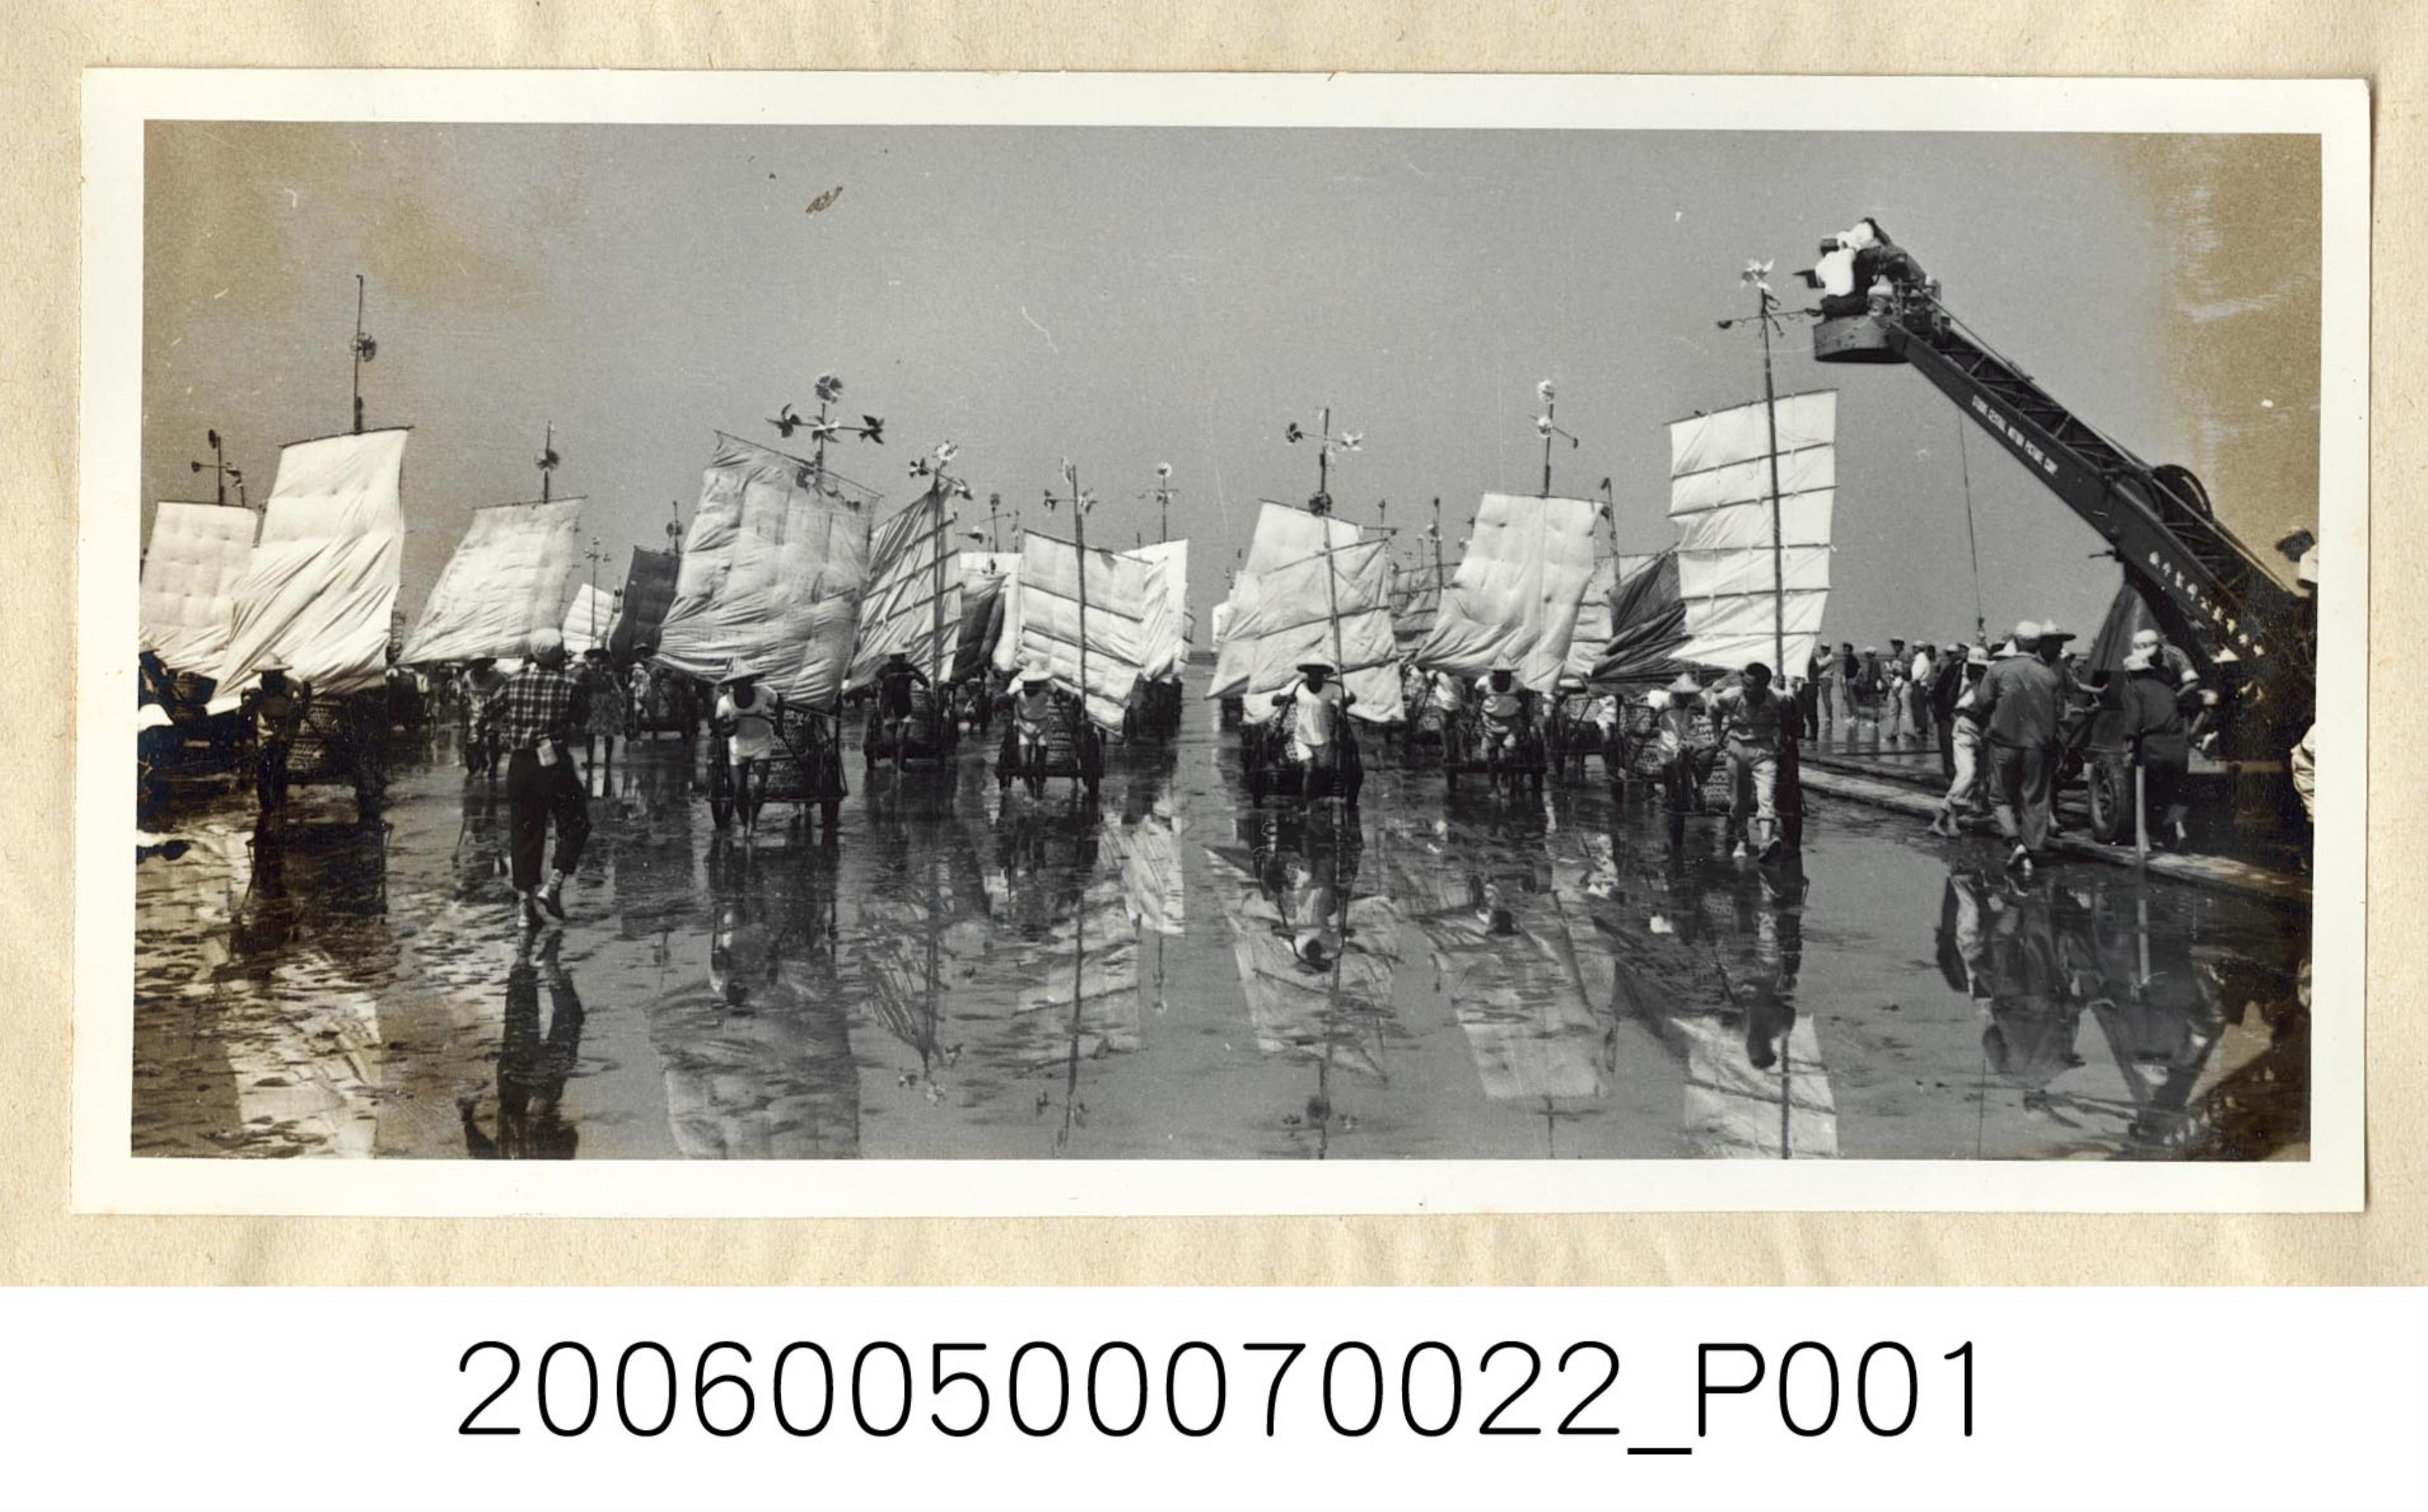 《華僑通訊社新聞照片集》〈風帆蚵車〉 (共1張)